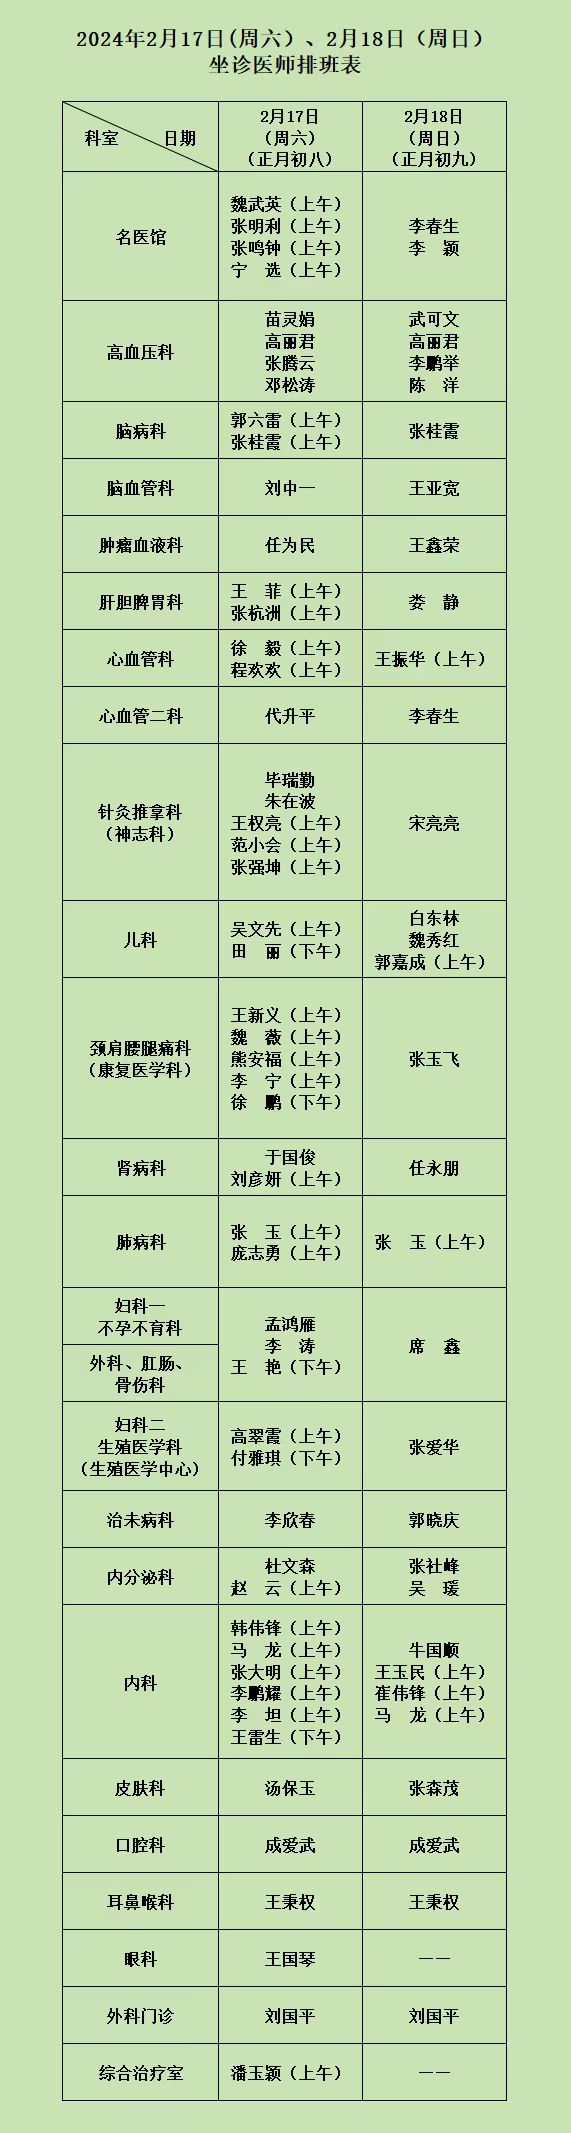 河南省中西医结合医院2月10日（周六、大年初一）和2月11日（周日、大年初二）坐诊医师排班表.jpg